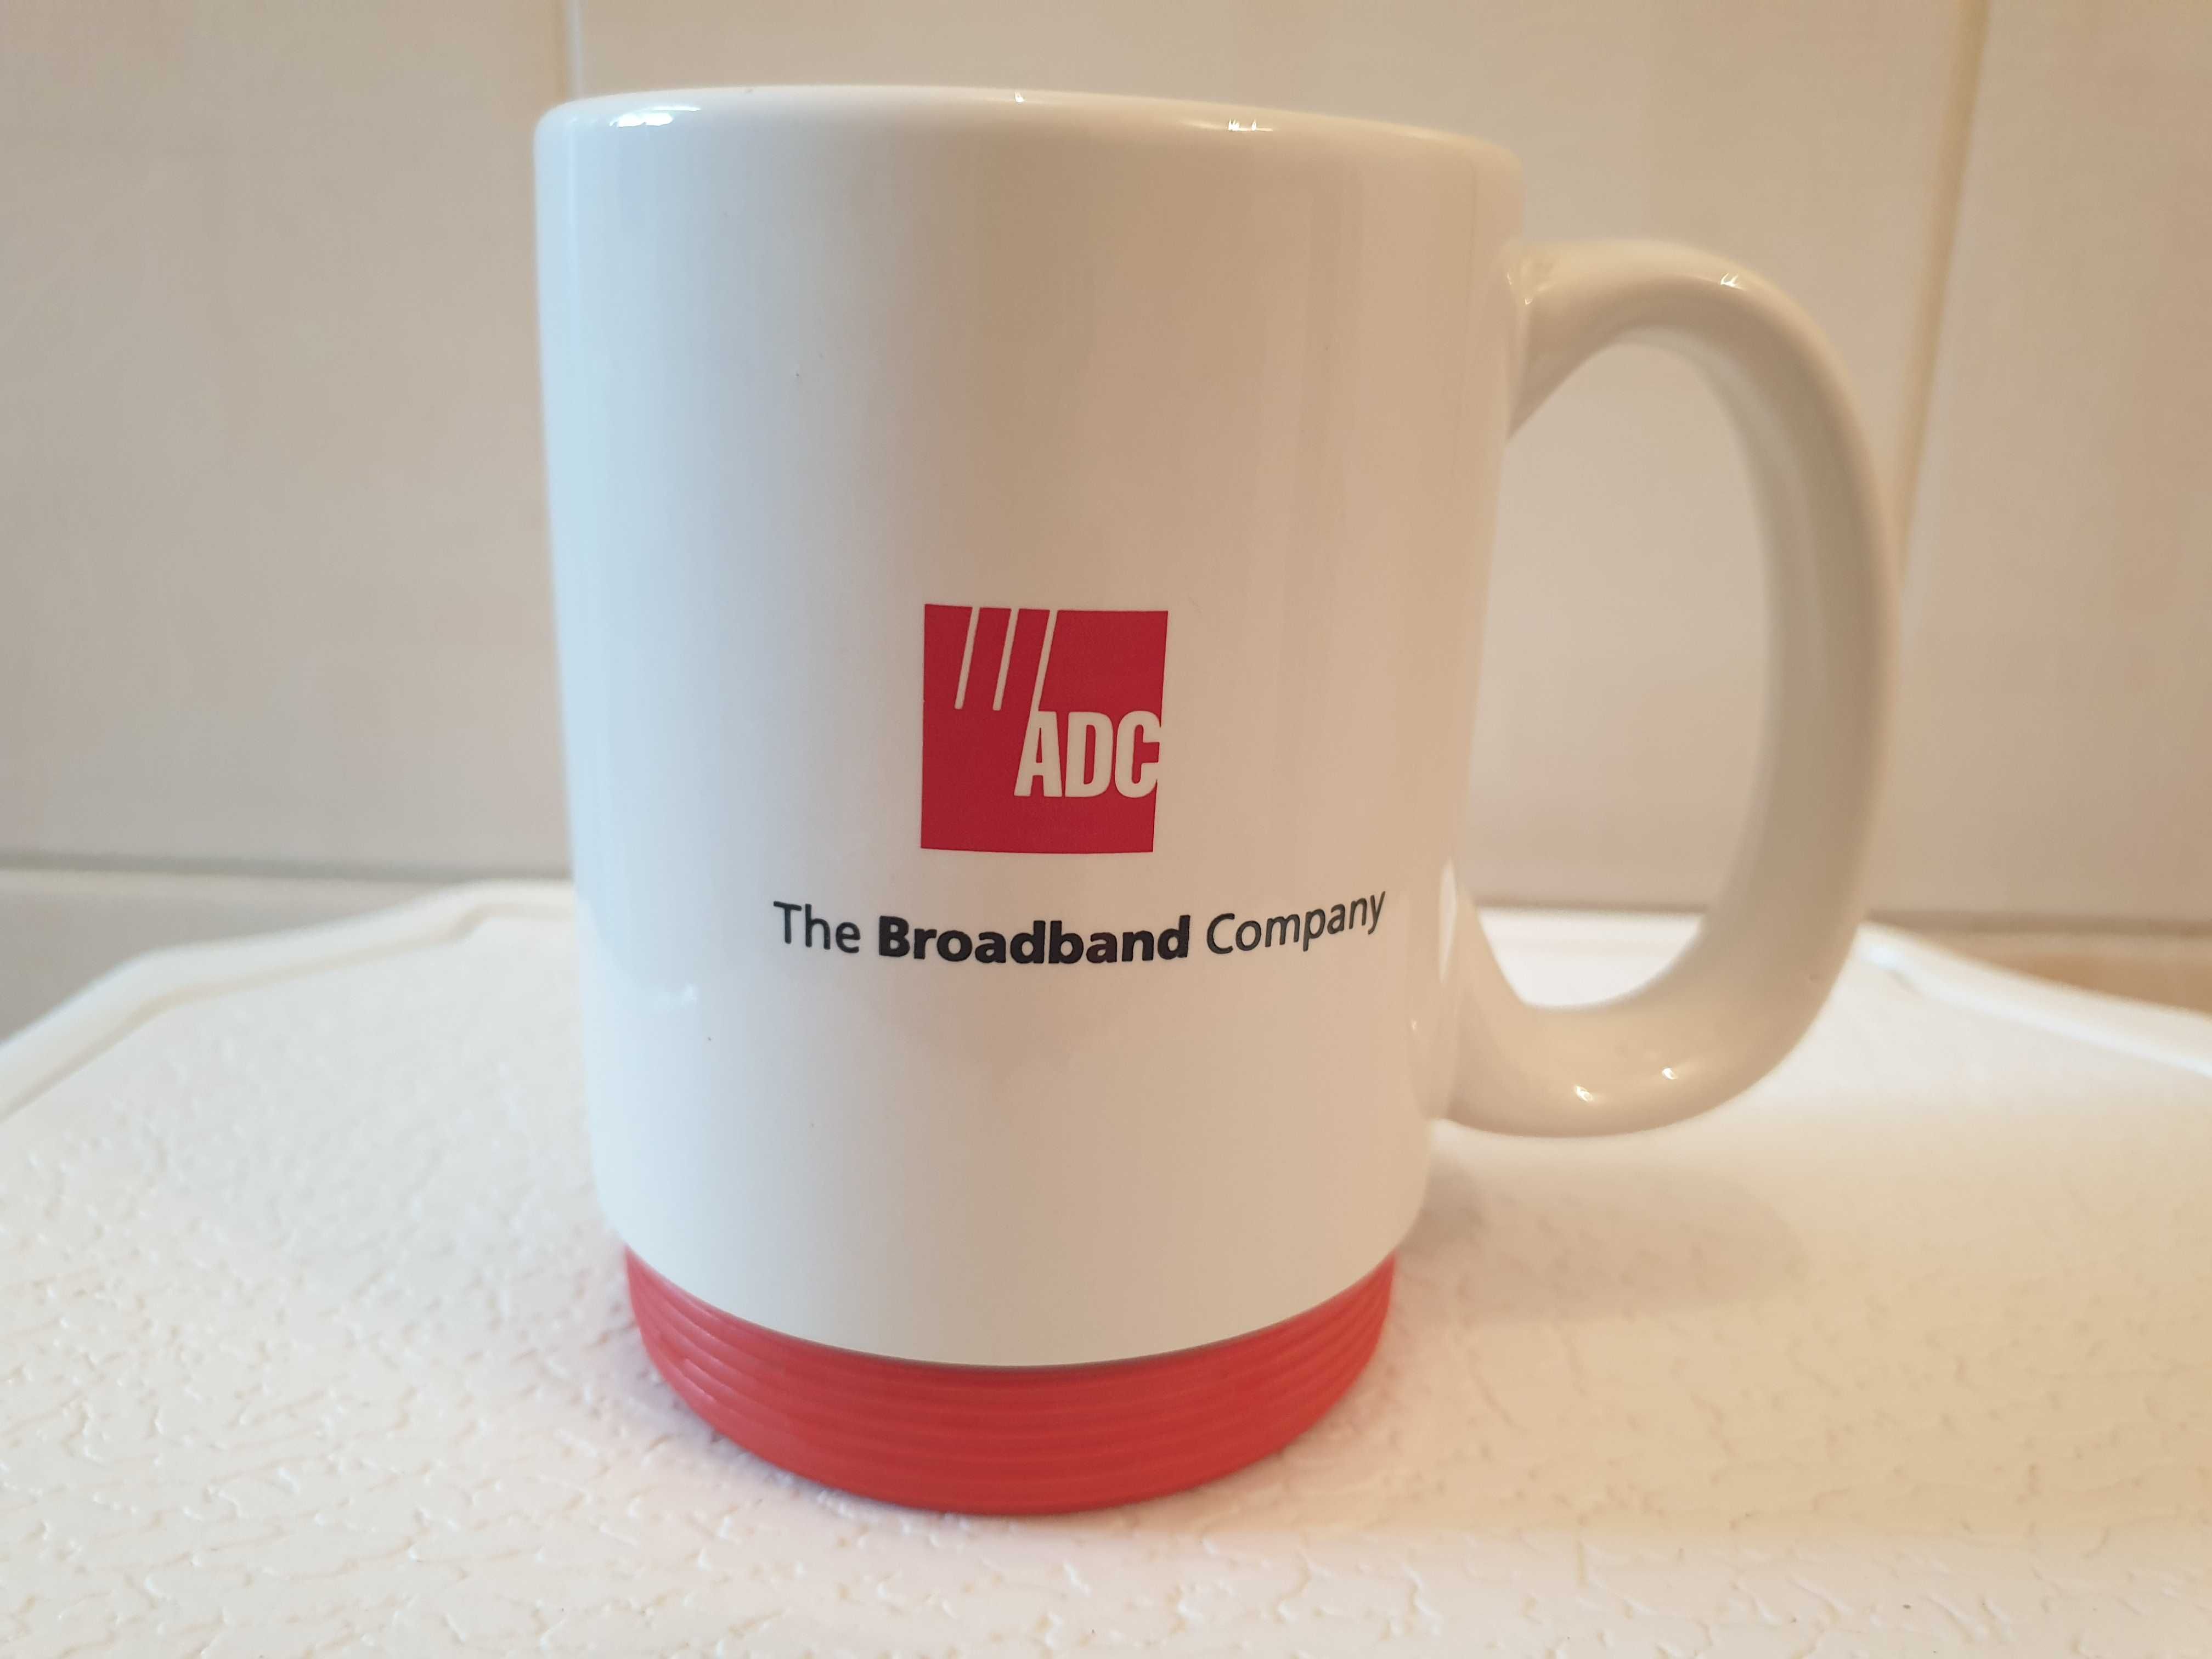 Kubek ADC The Broadband Company ceramiczny produkcja USA unikat